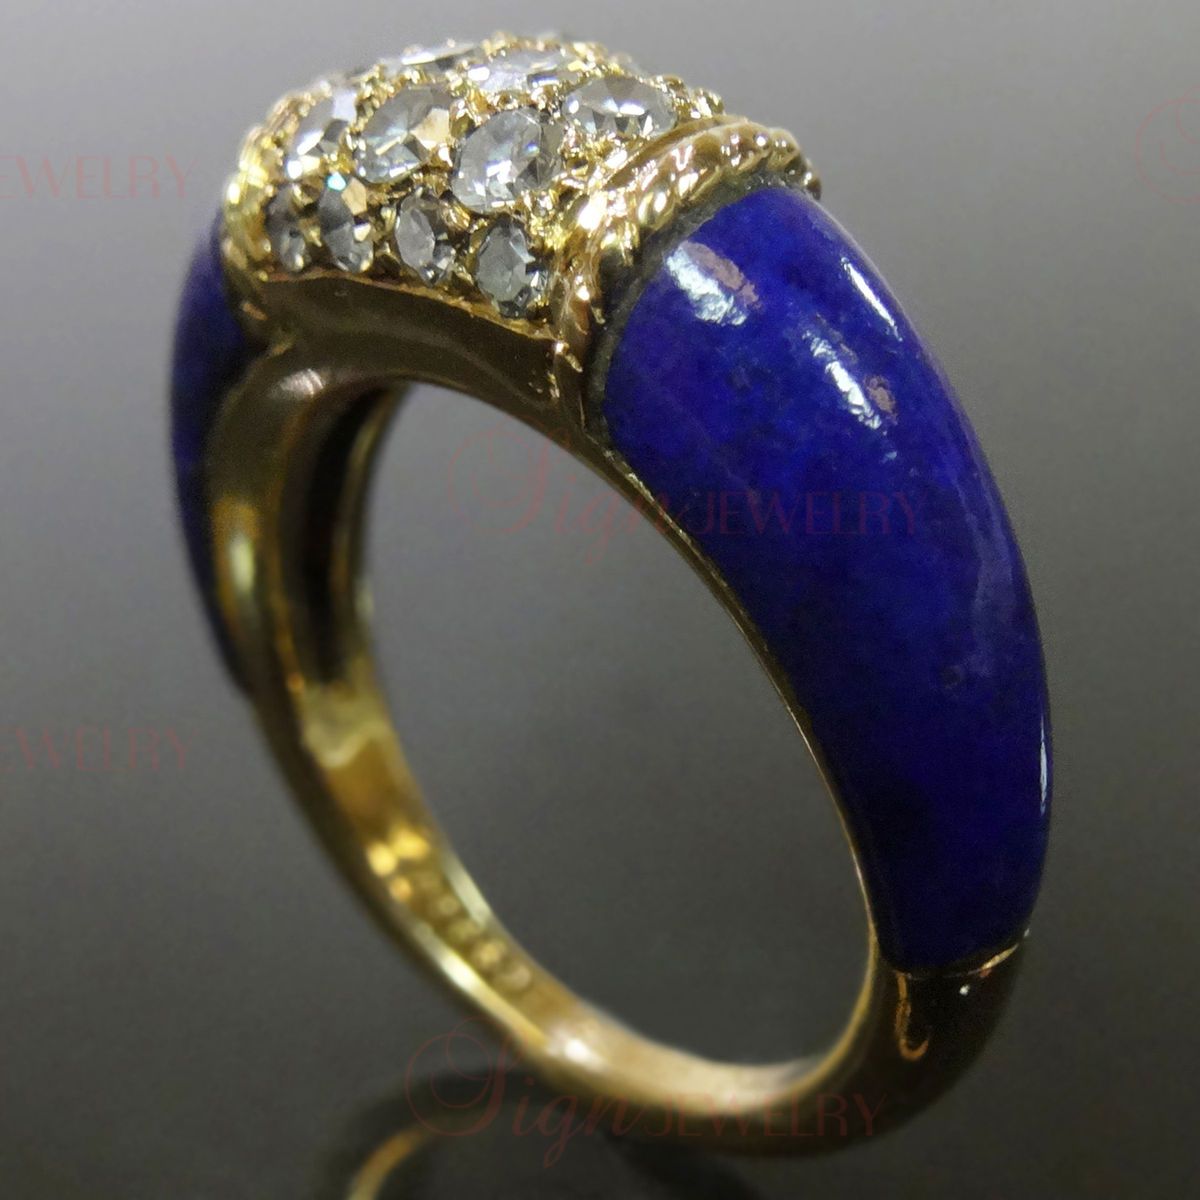 VAN CLEEF & ARPELS 18k Yellow Gold Diamond Lapis Lazuli Ring